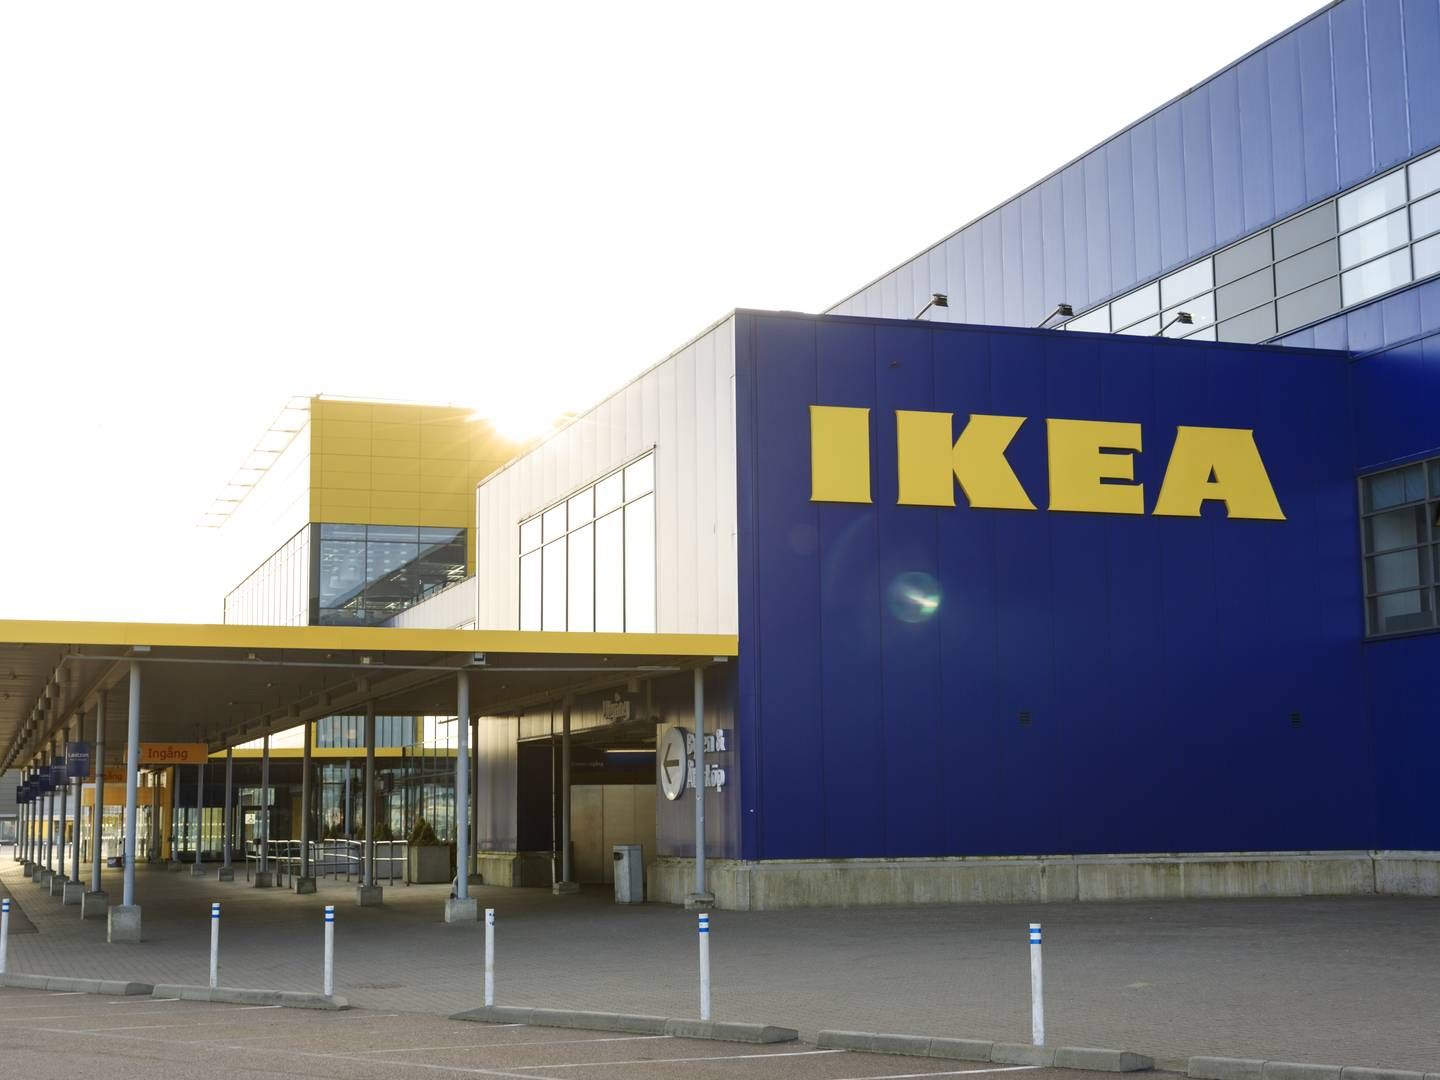 Det belgiske parti Vlaams Belang har fremlagt "IKEA-planen", som er en politisk kampagne mod indvandring. | Foto: IKEA